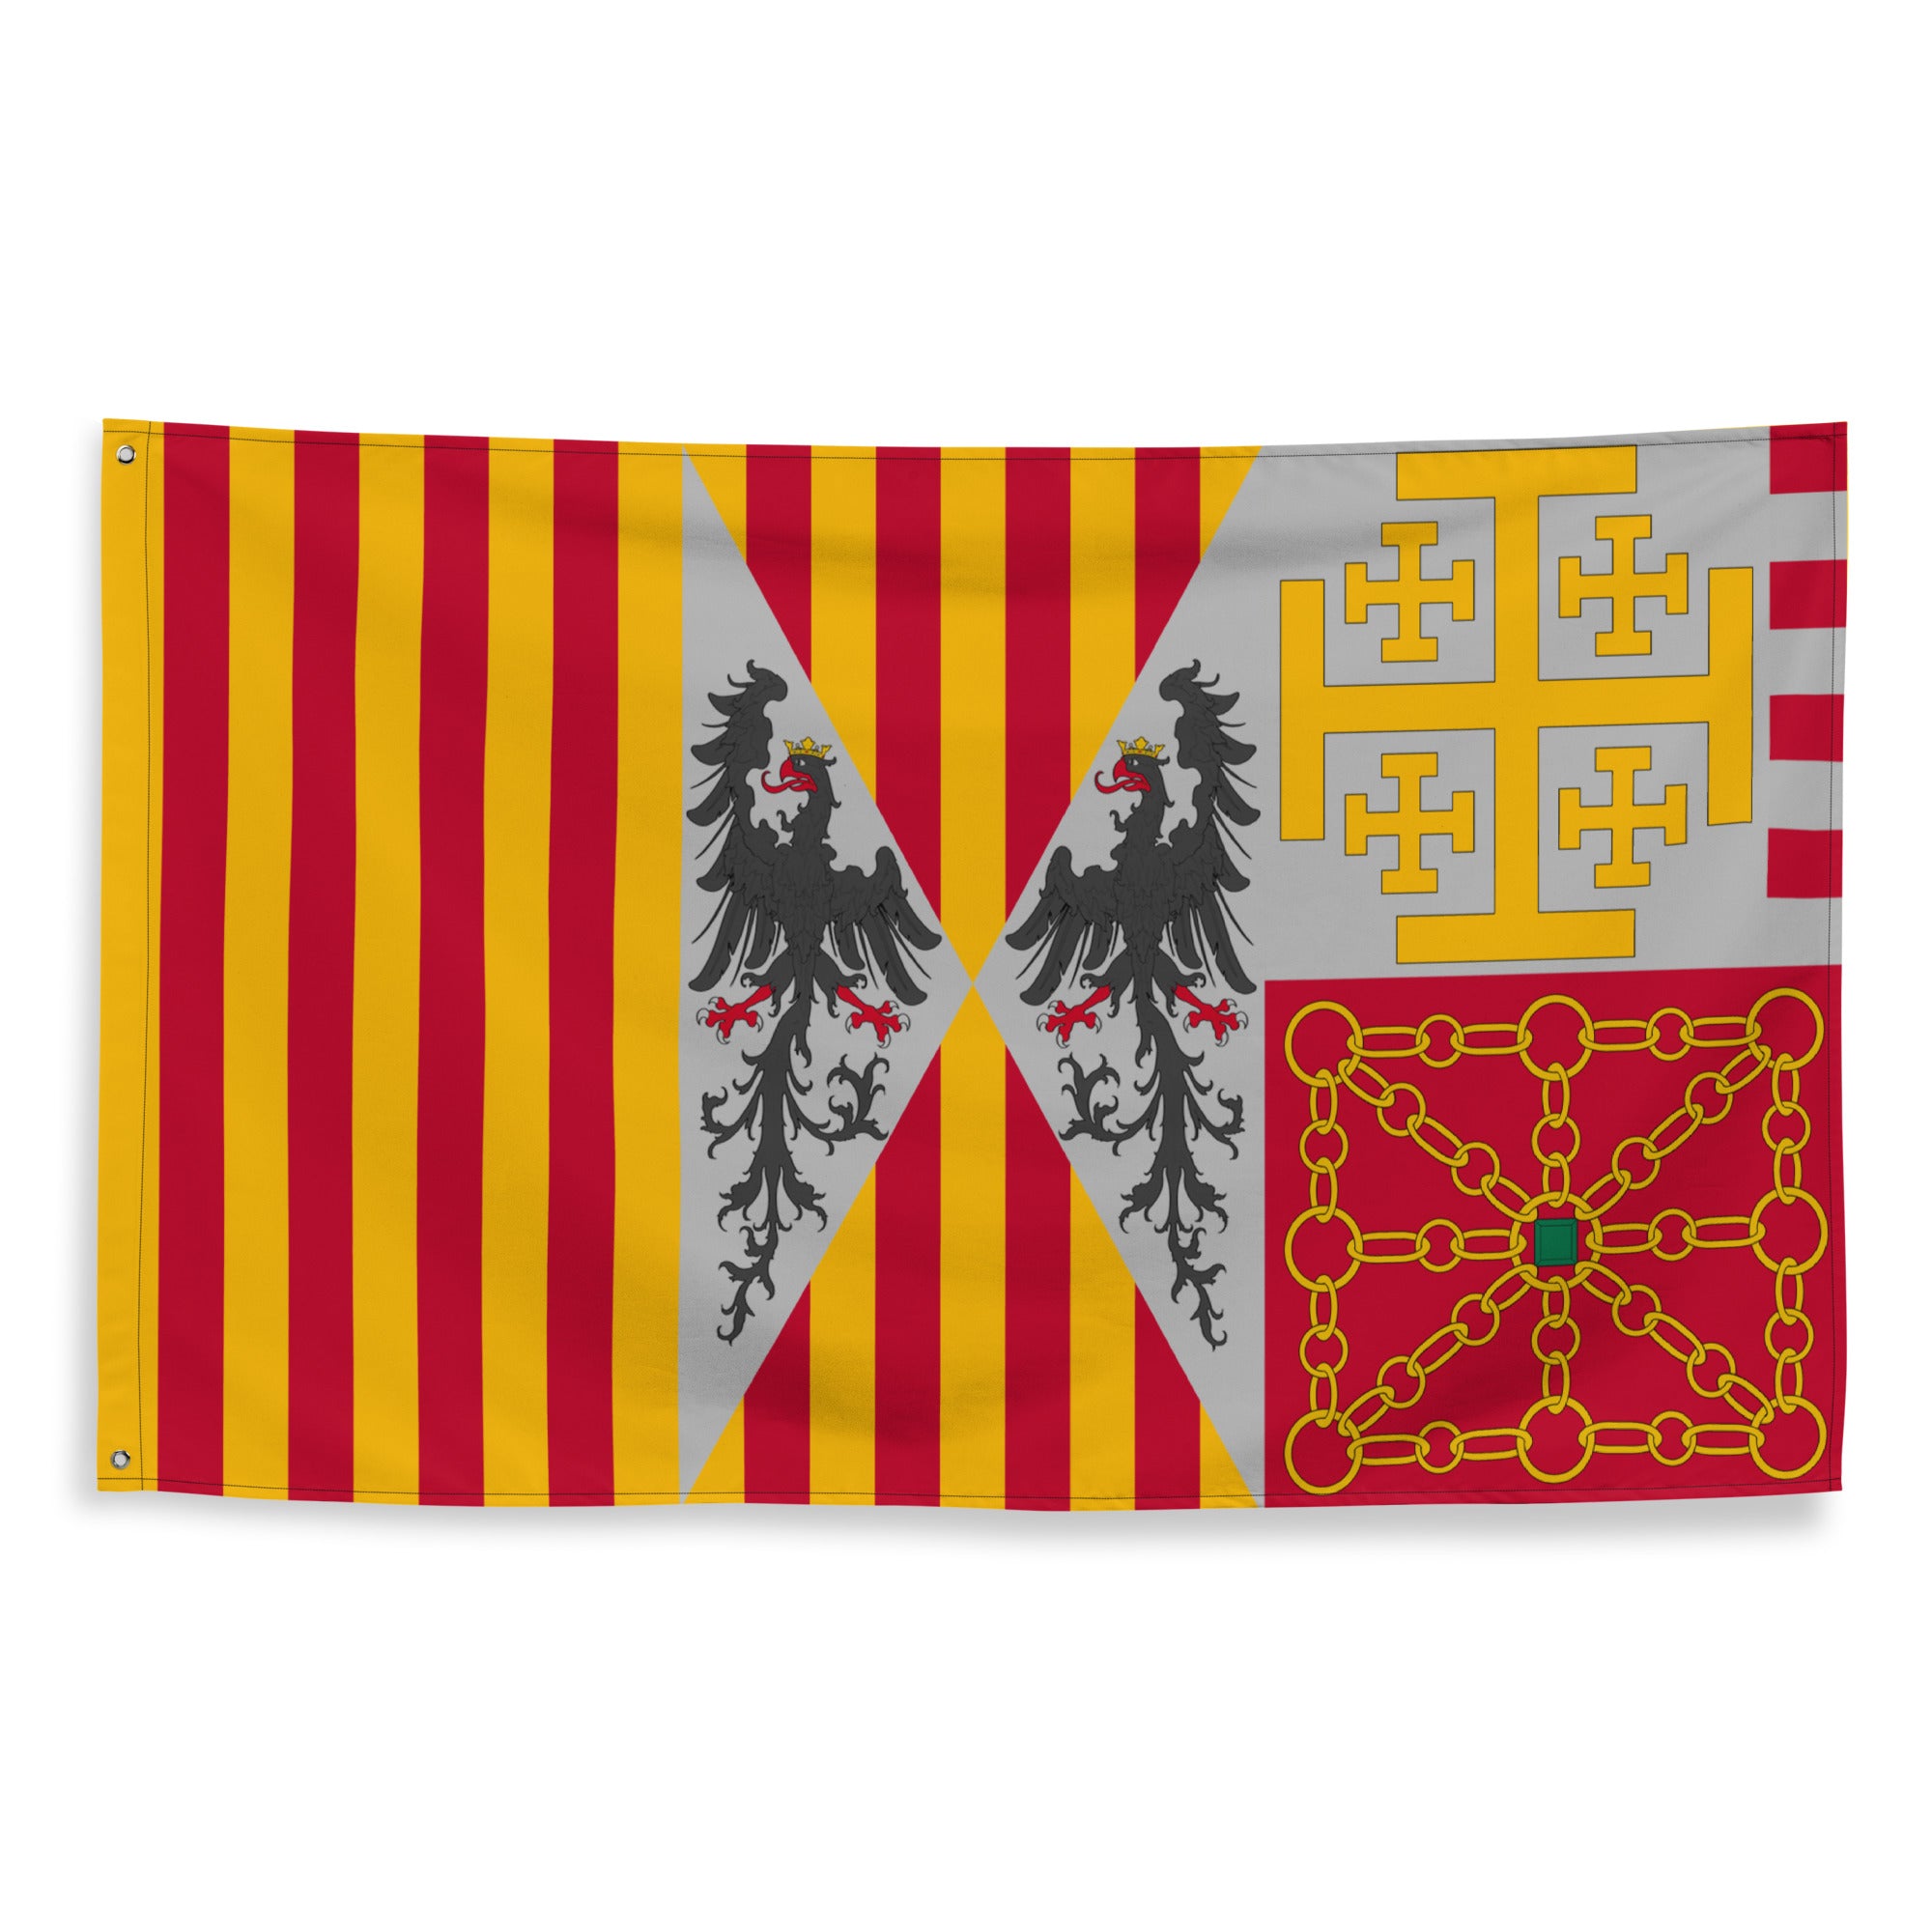 Stendardo araldico d'armi (Corona d'Aragona)